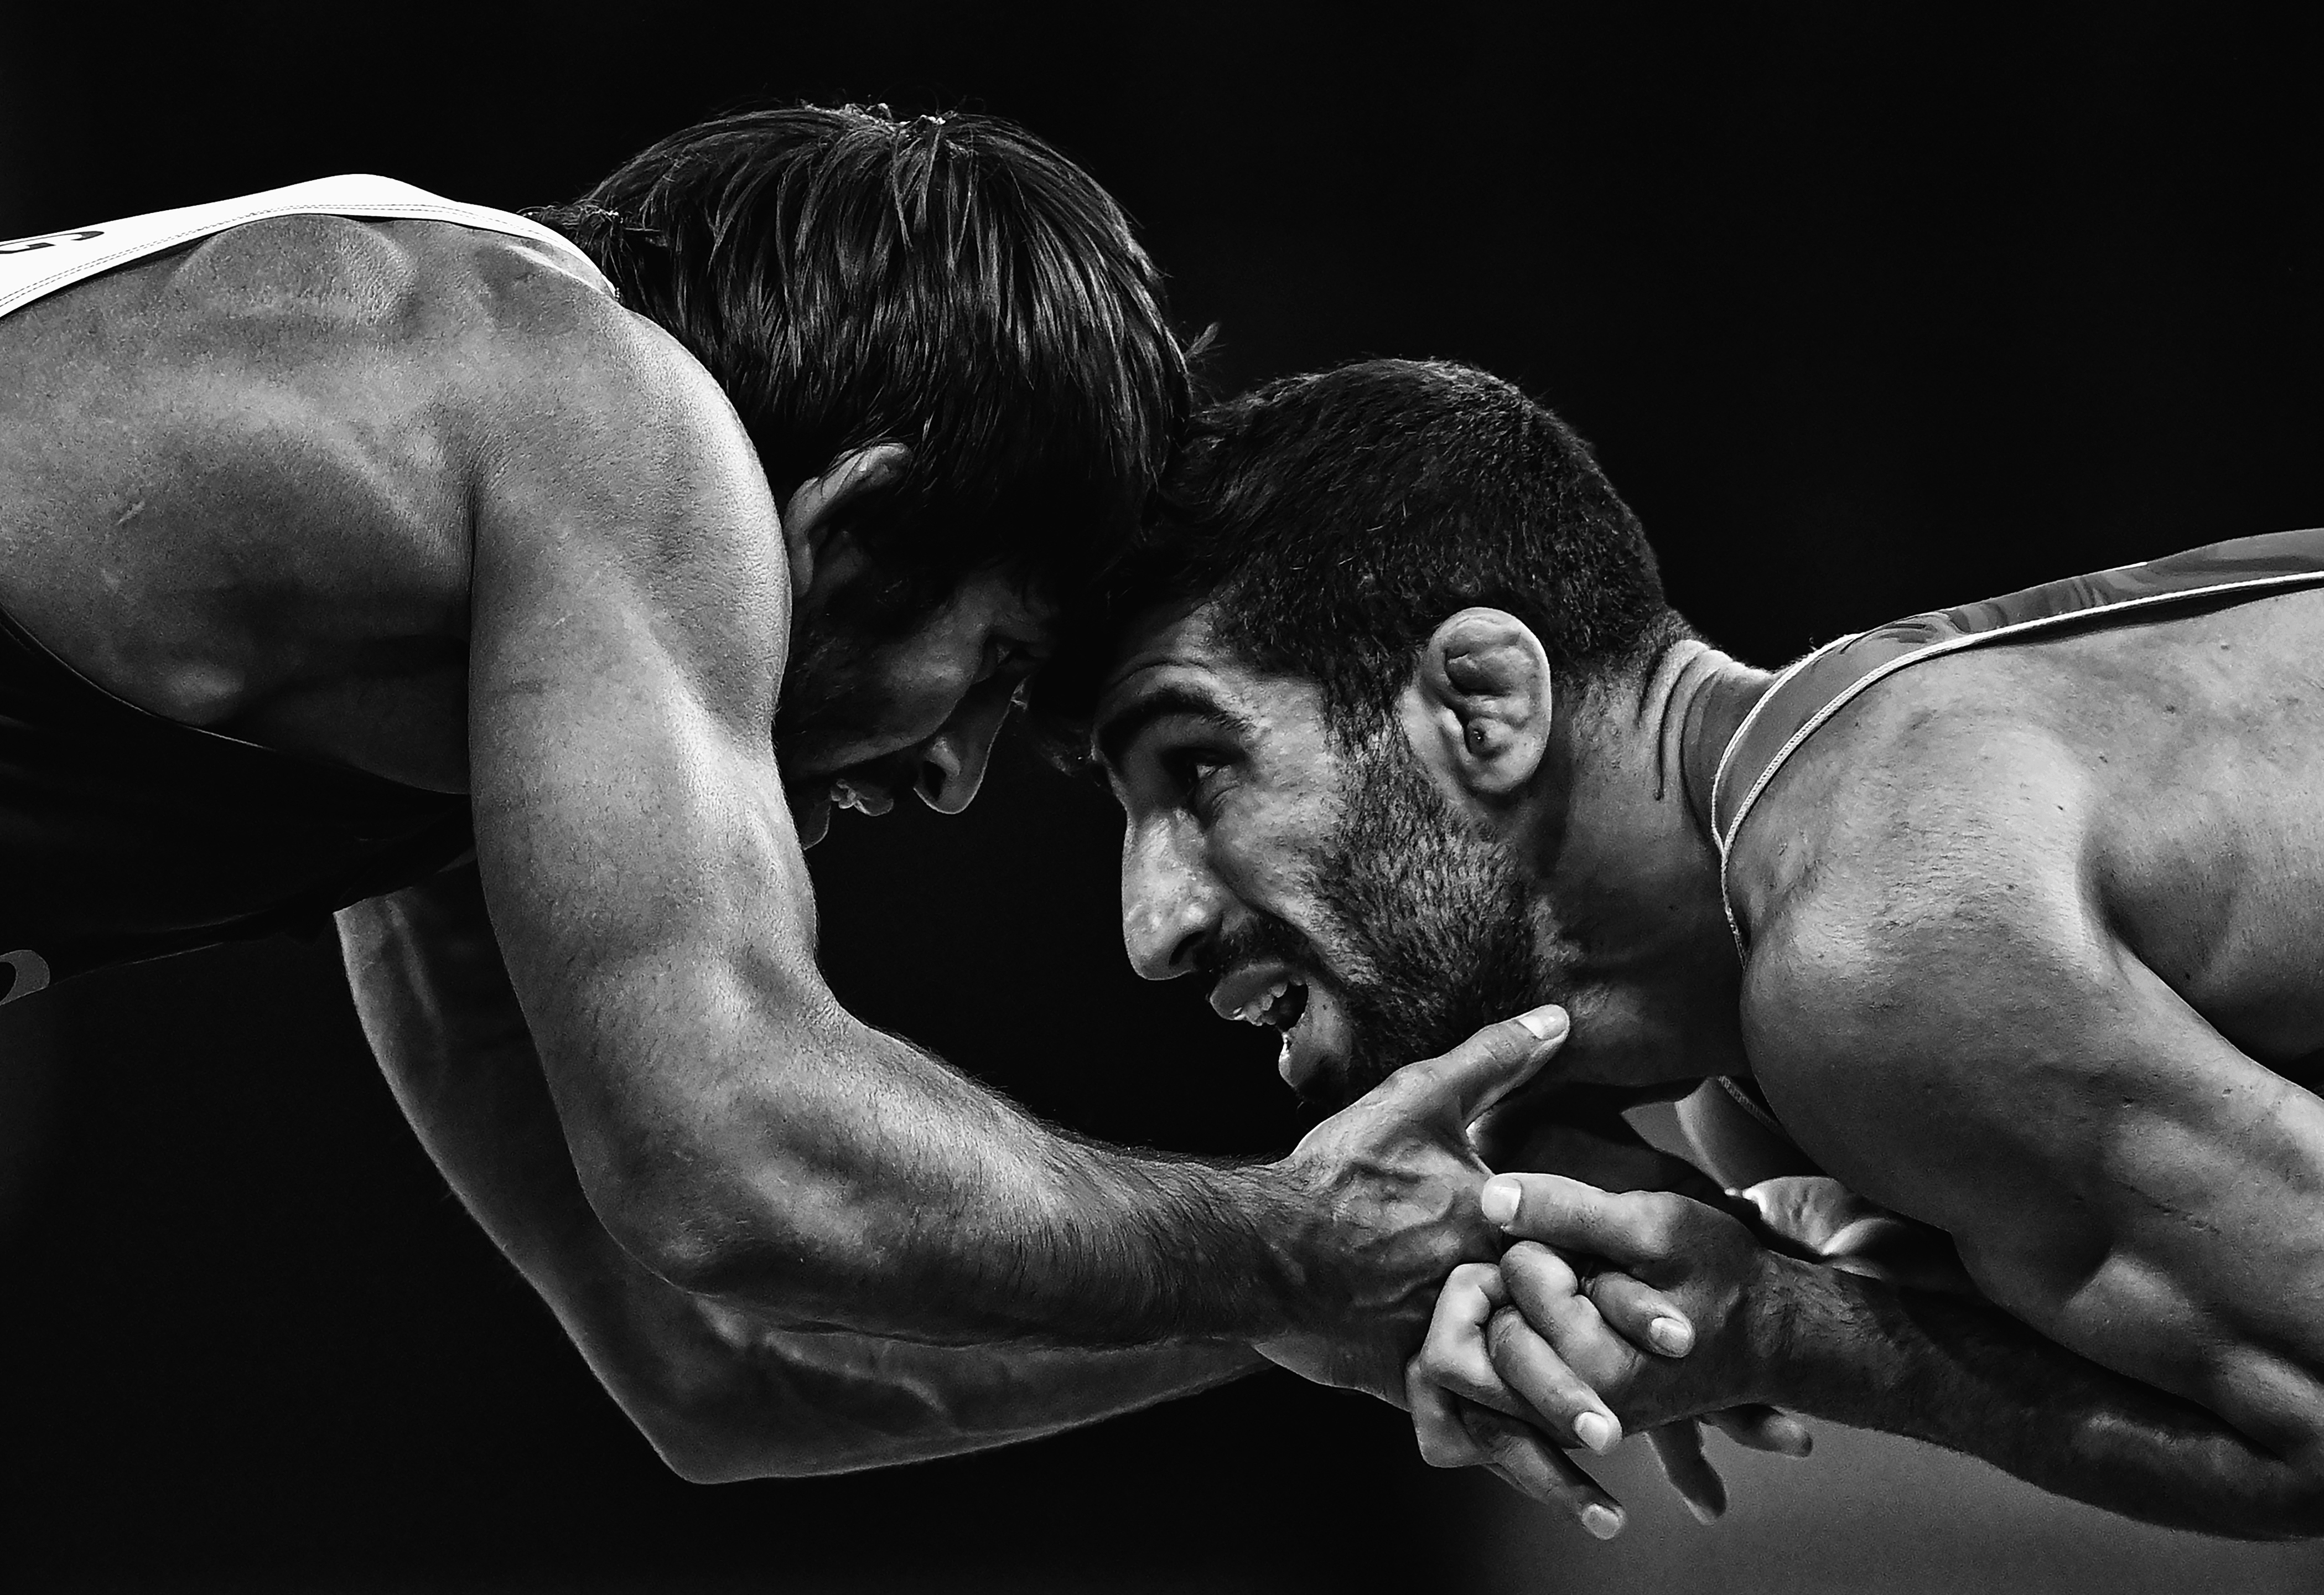 olympic wrestling wallpaper